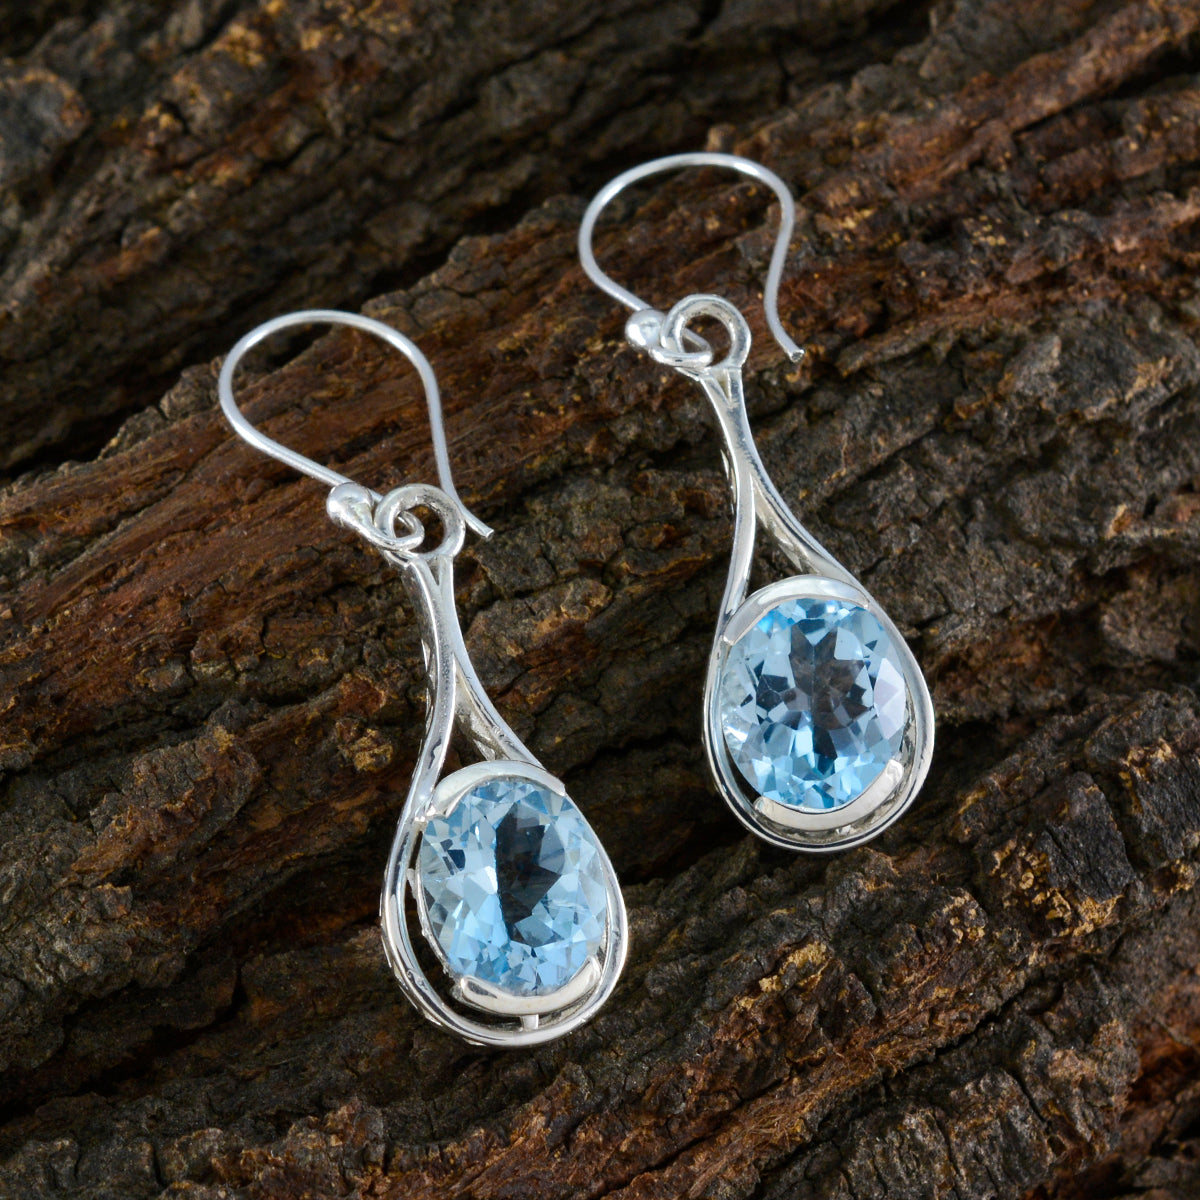 Riyo Gorgeous Sterling Silver Earring For Sister Blue Topaz Earring Bezel Setting Blue Earring Dangle Earring